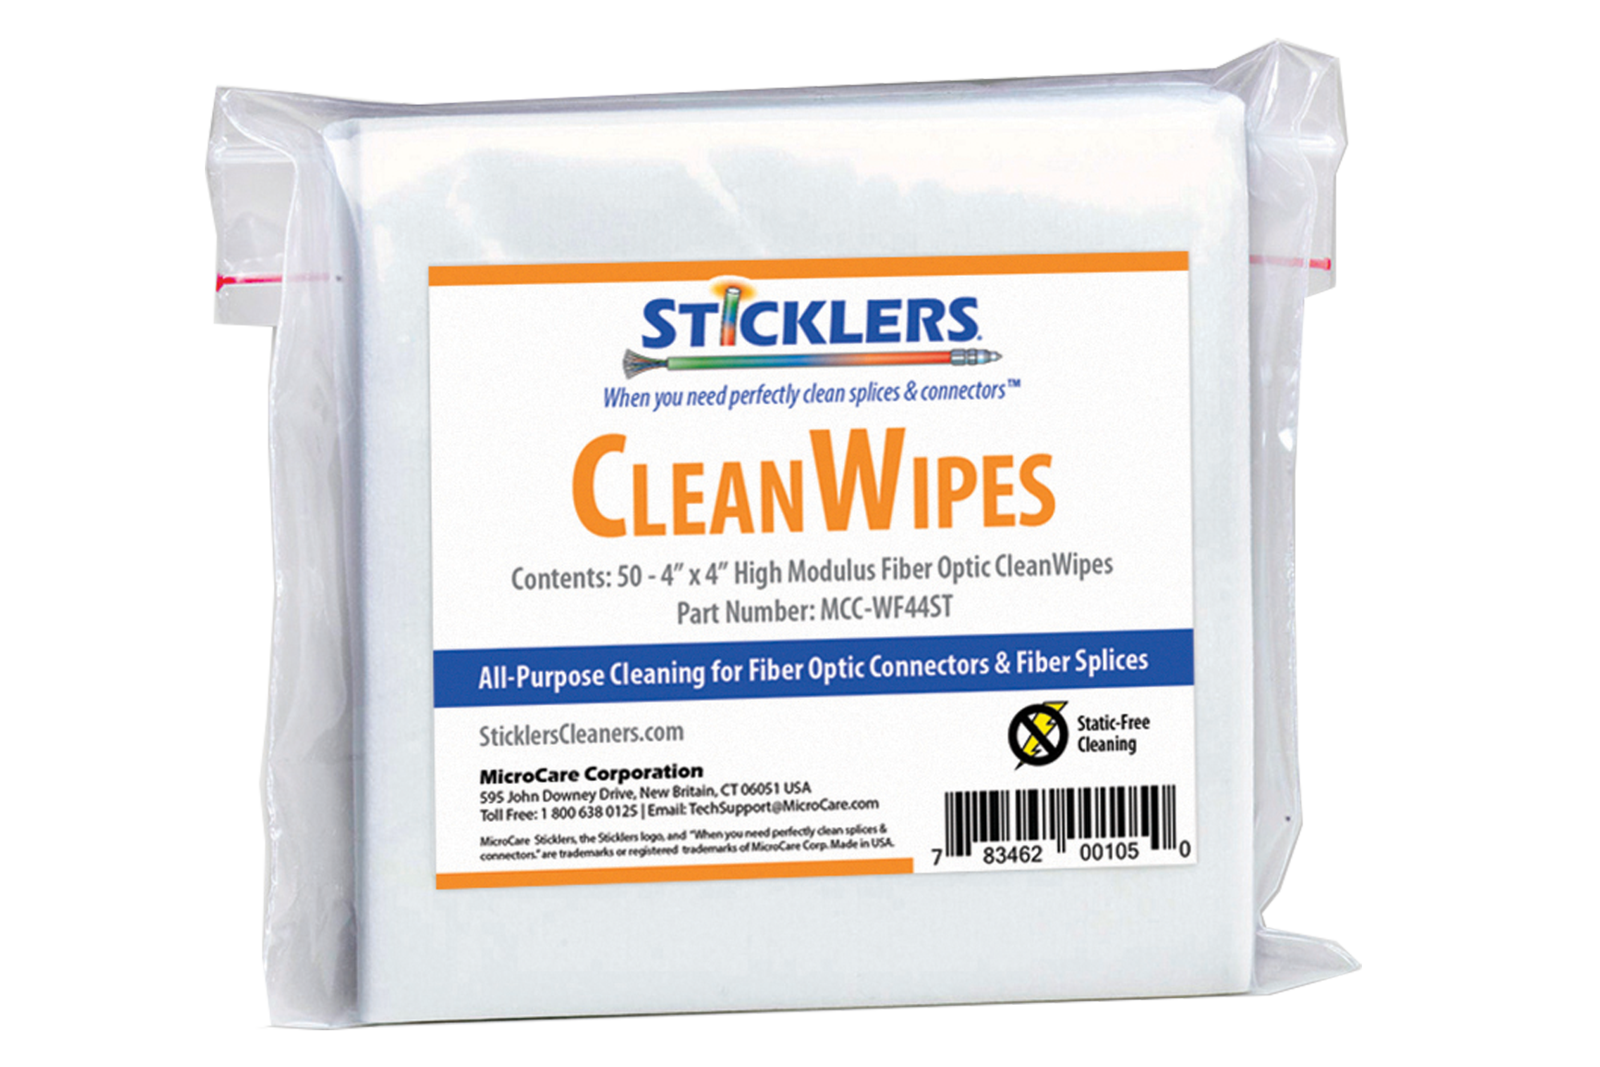 sticklers clean wipes fiber optic wipes mcc-wf44st